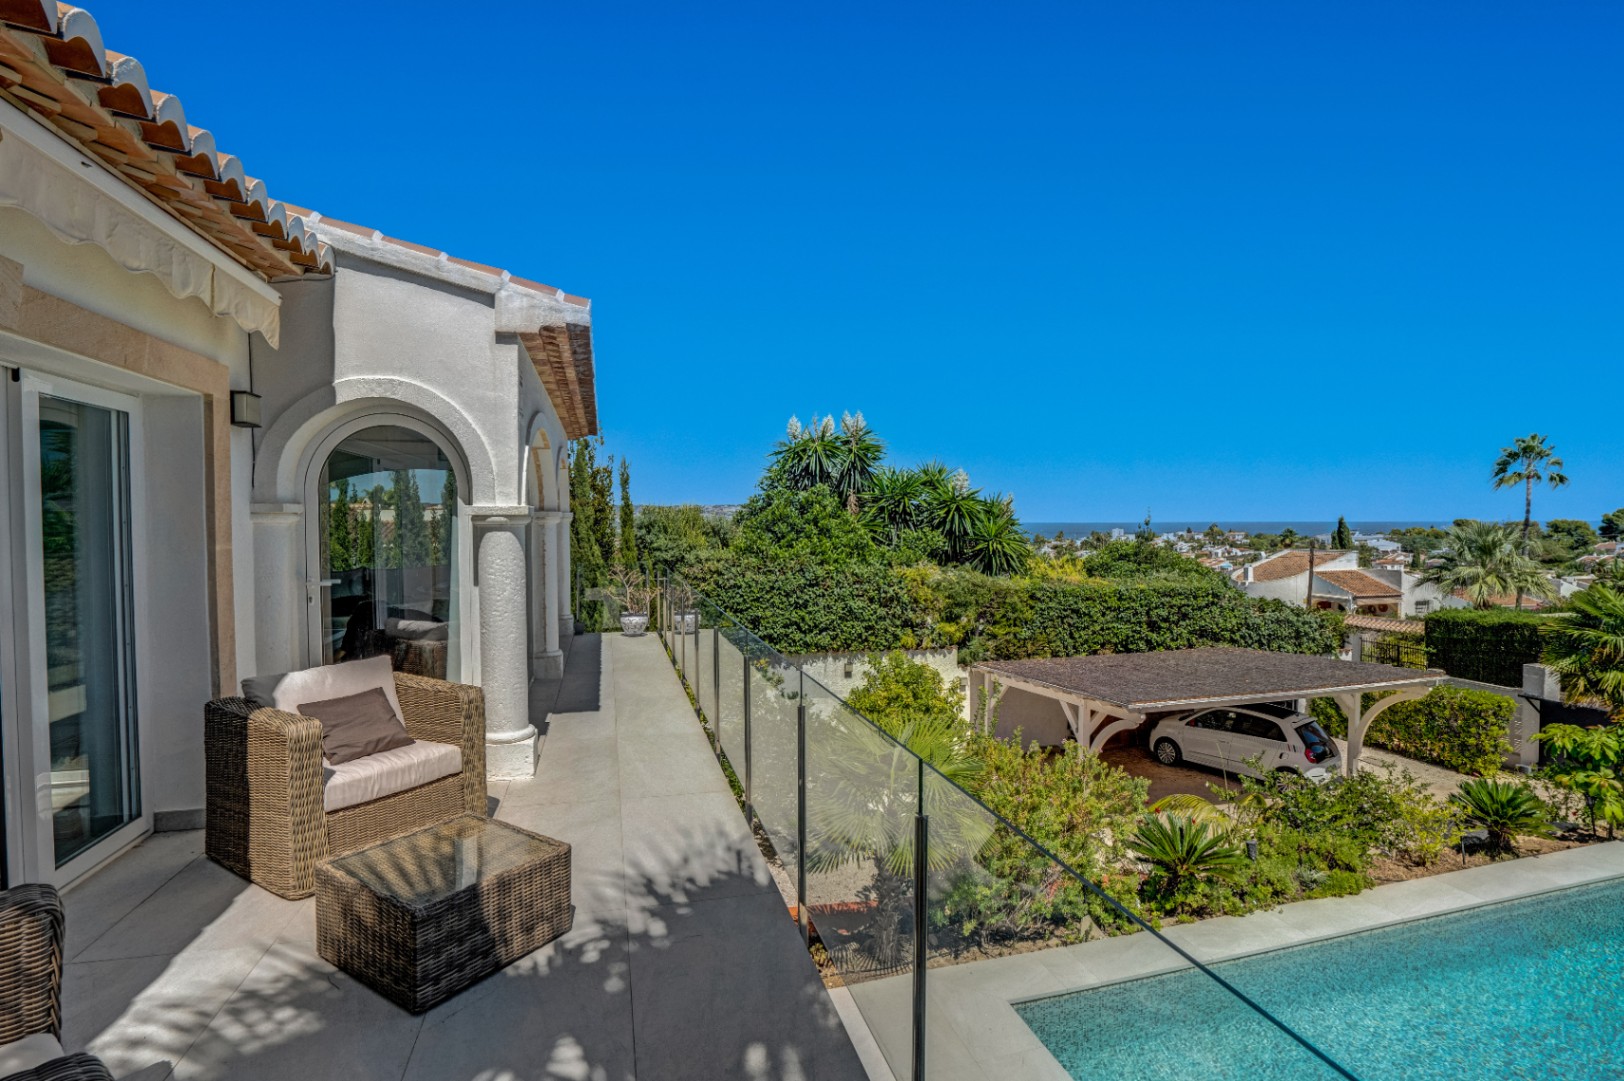 Villa zum Verkauf mit Meerblick in der renommierten Urbanisation Pinosol de Javea.